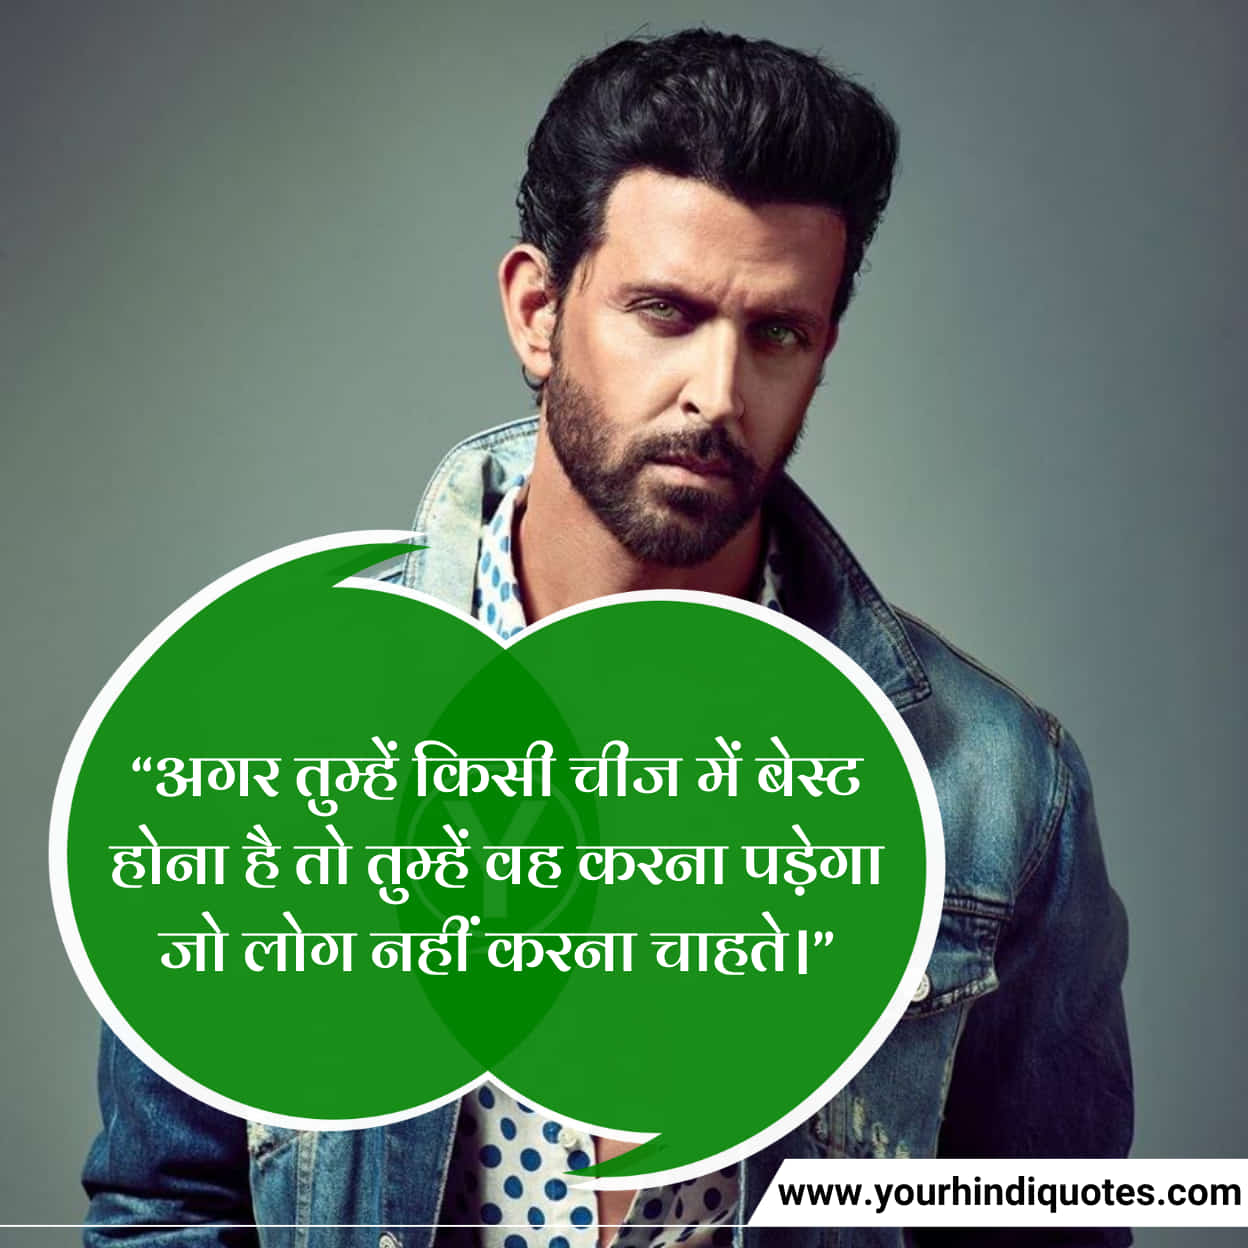 Inspiring Hindi Quotes